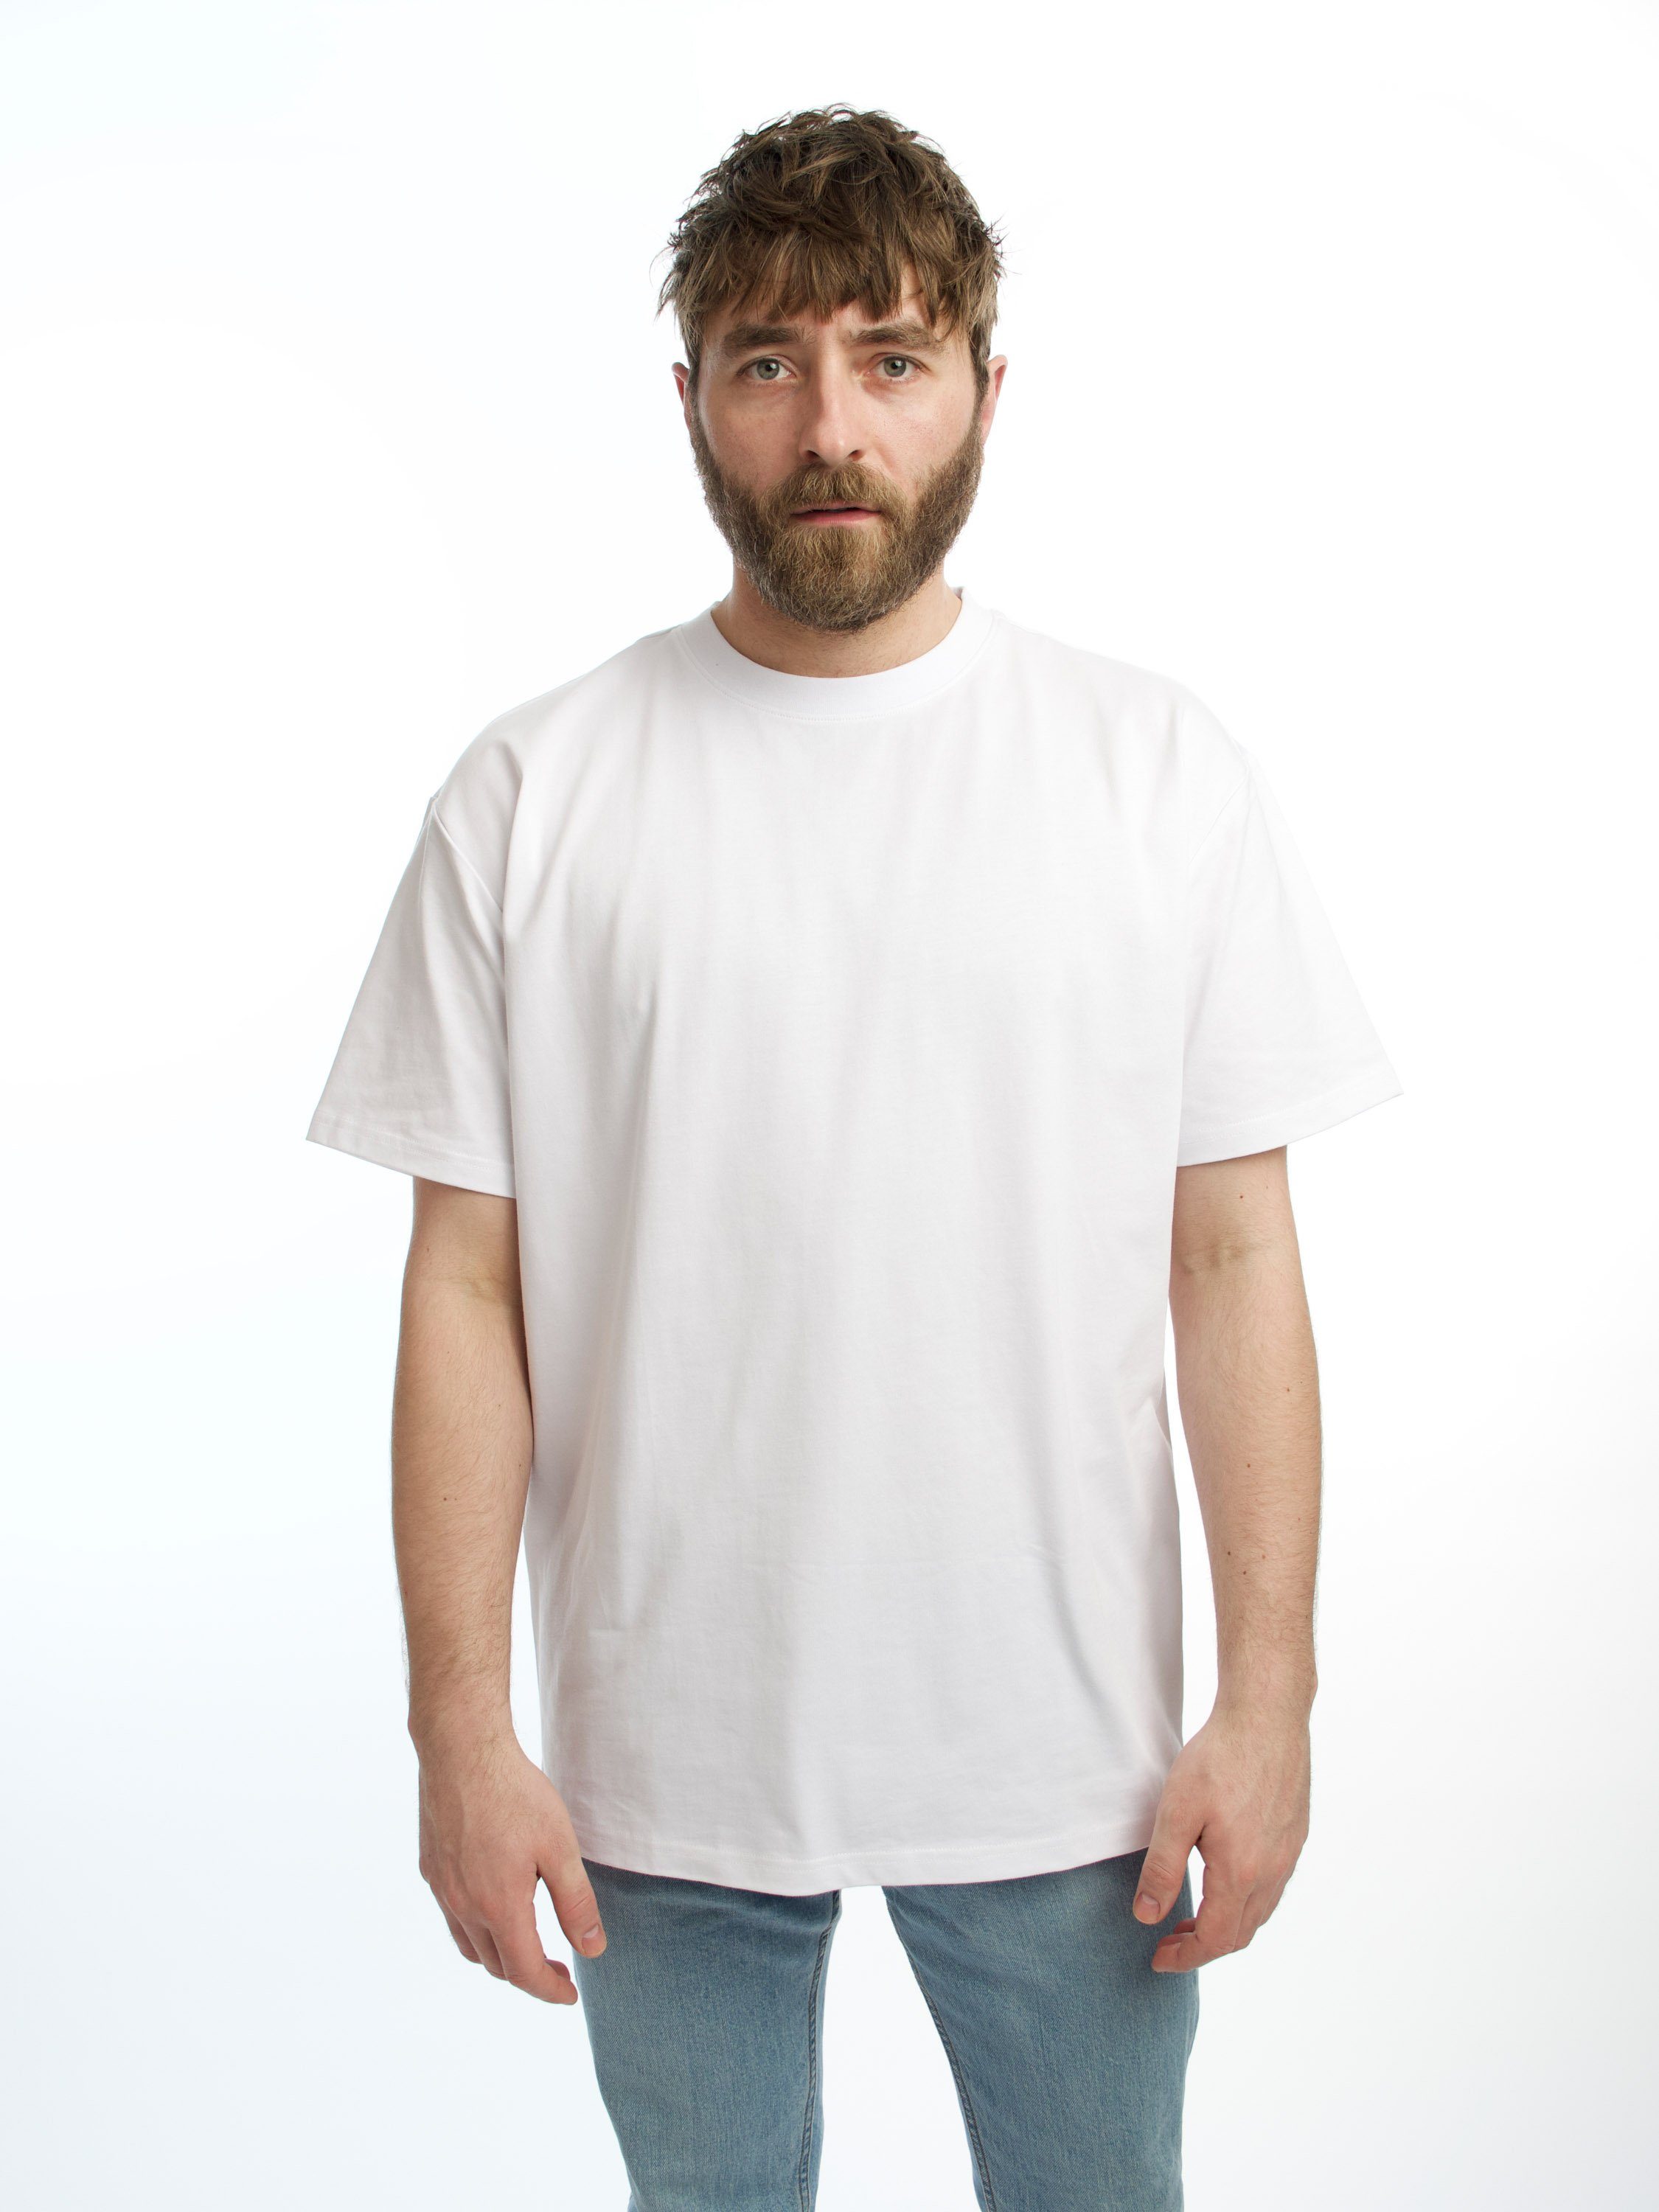 Rundhalsshirt GRS aus BASICS OG Bio-Baumwolle OCS zertifizierter Shirt weiß und HONEST